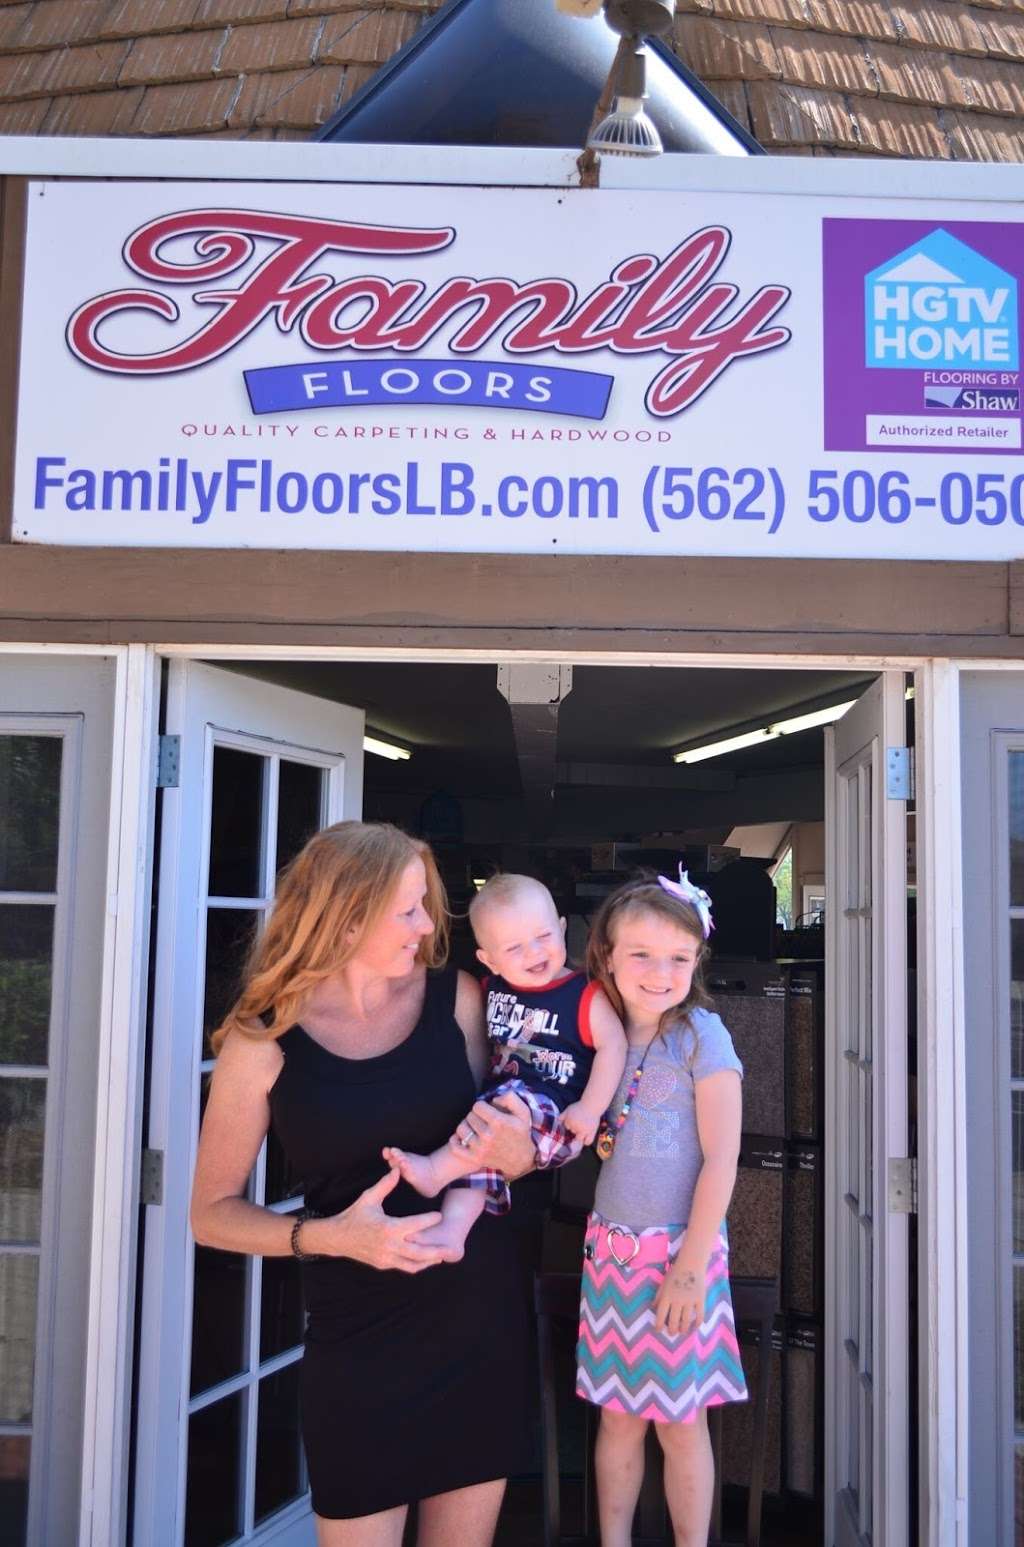 Family Floors Inc. | 6447 E Spring St, Long Beach, CA 90808, USA | Phone: (562) 506-0505